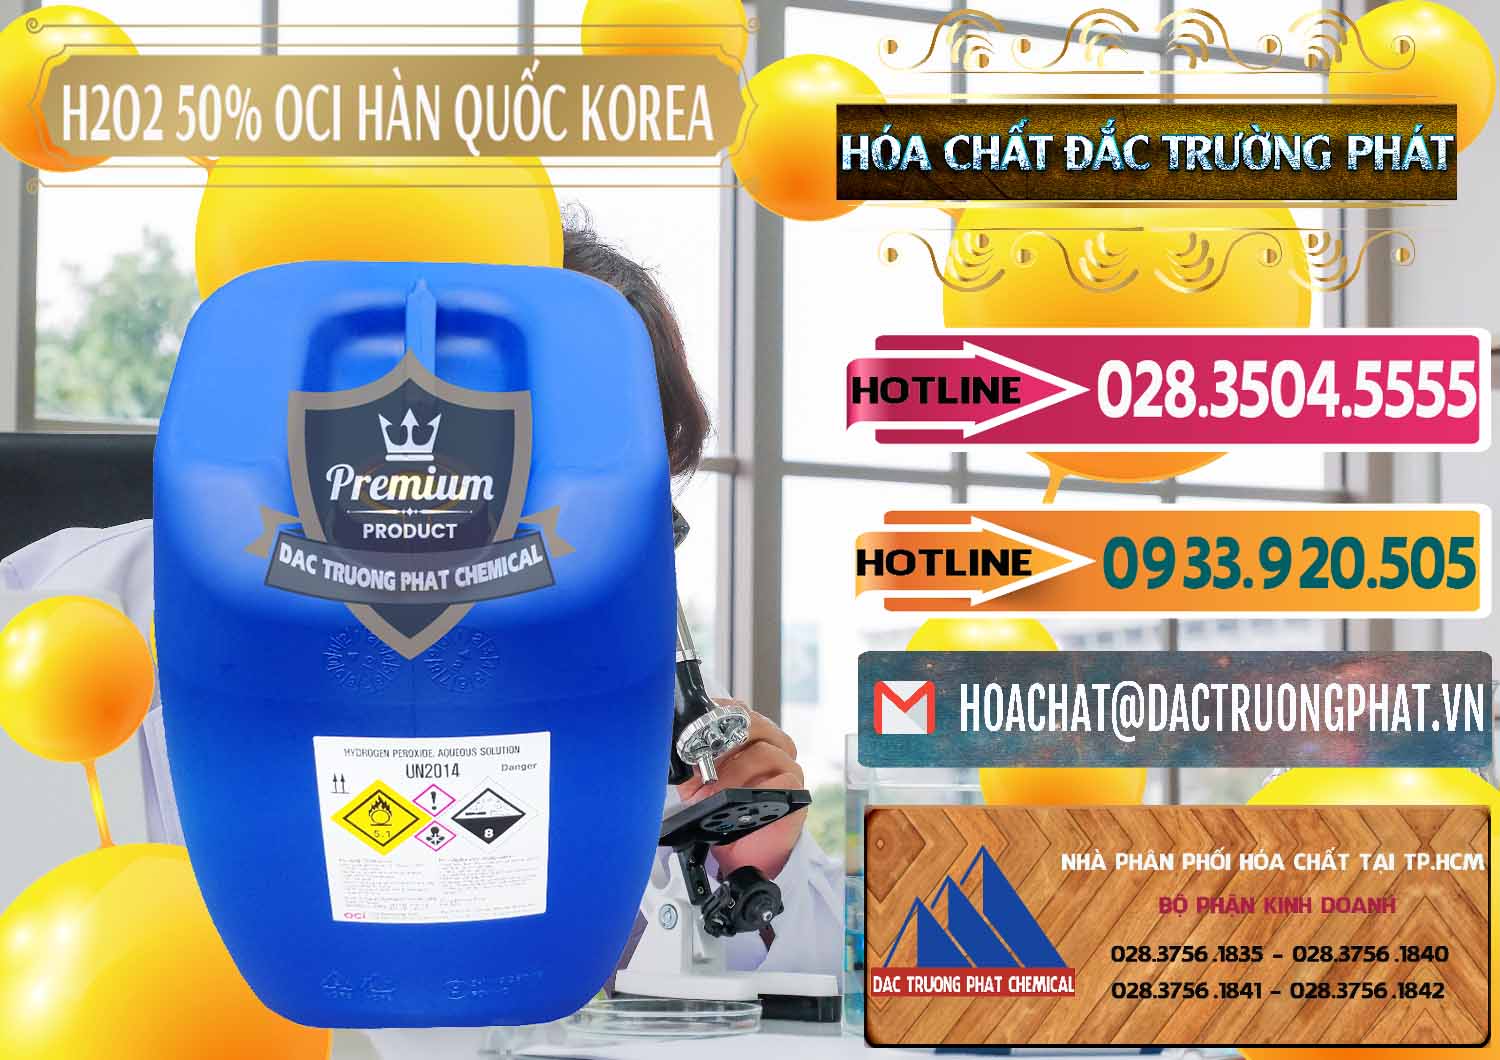 Cty bán và cung ứng H2O2 - Hydrogen Peroxide 50% OCI Hàn Quốc Korea - 0075 - Cty chuyên kinh doanh ( cung cấp ) hóa chất tại TP.HCM - dactruongphat.vn